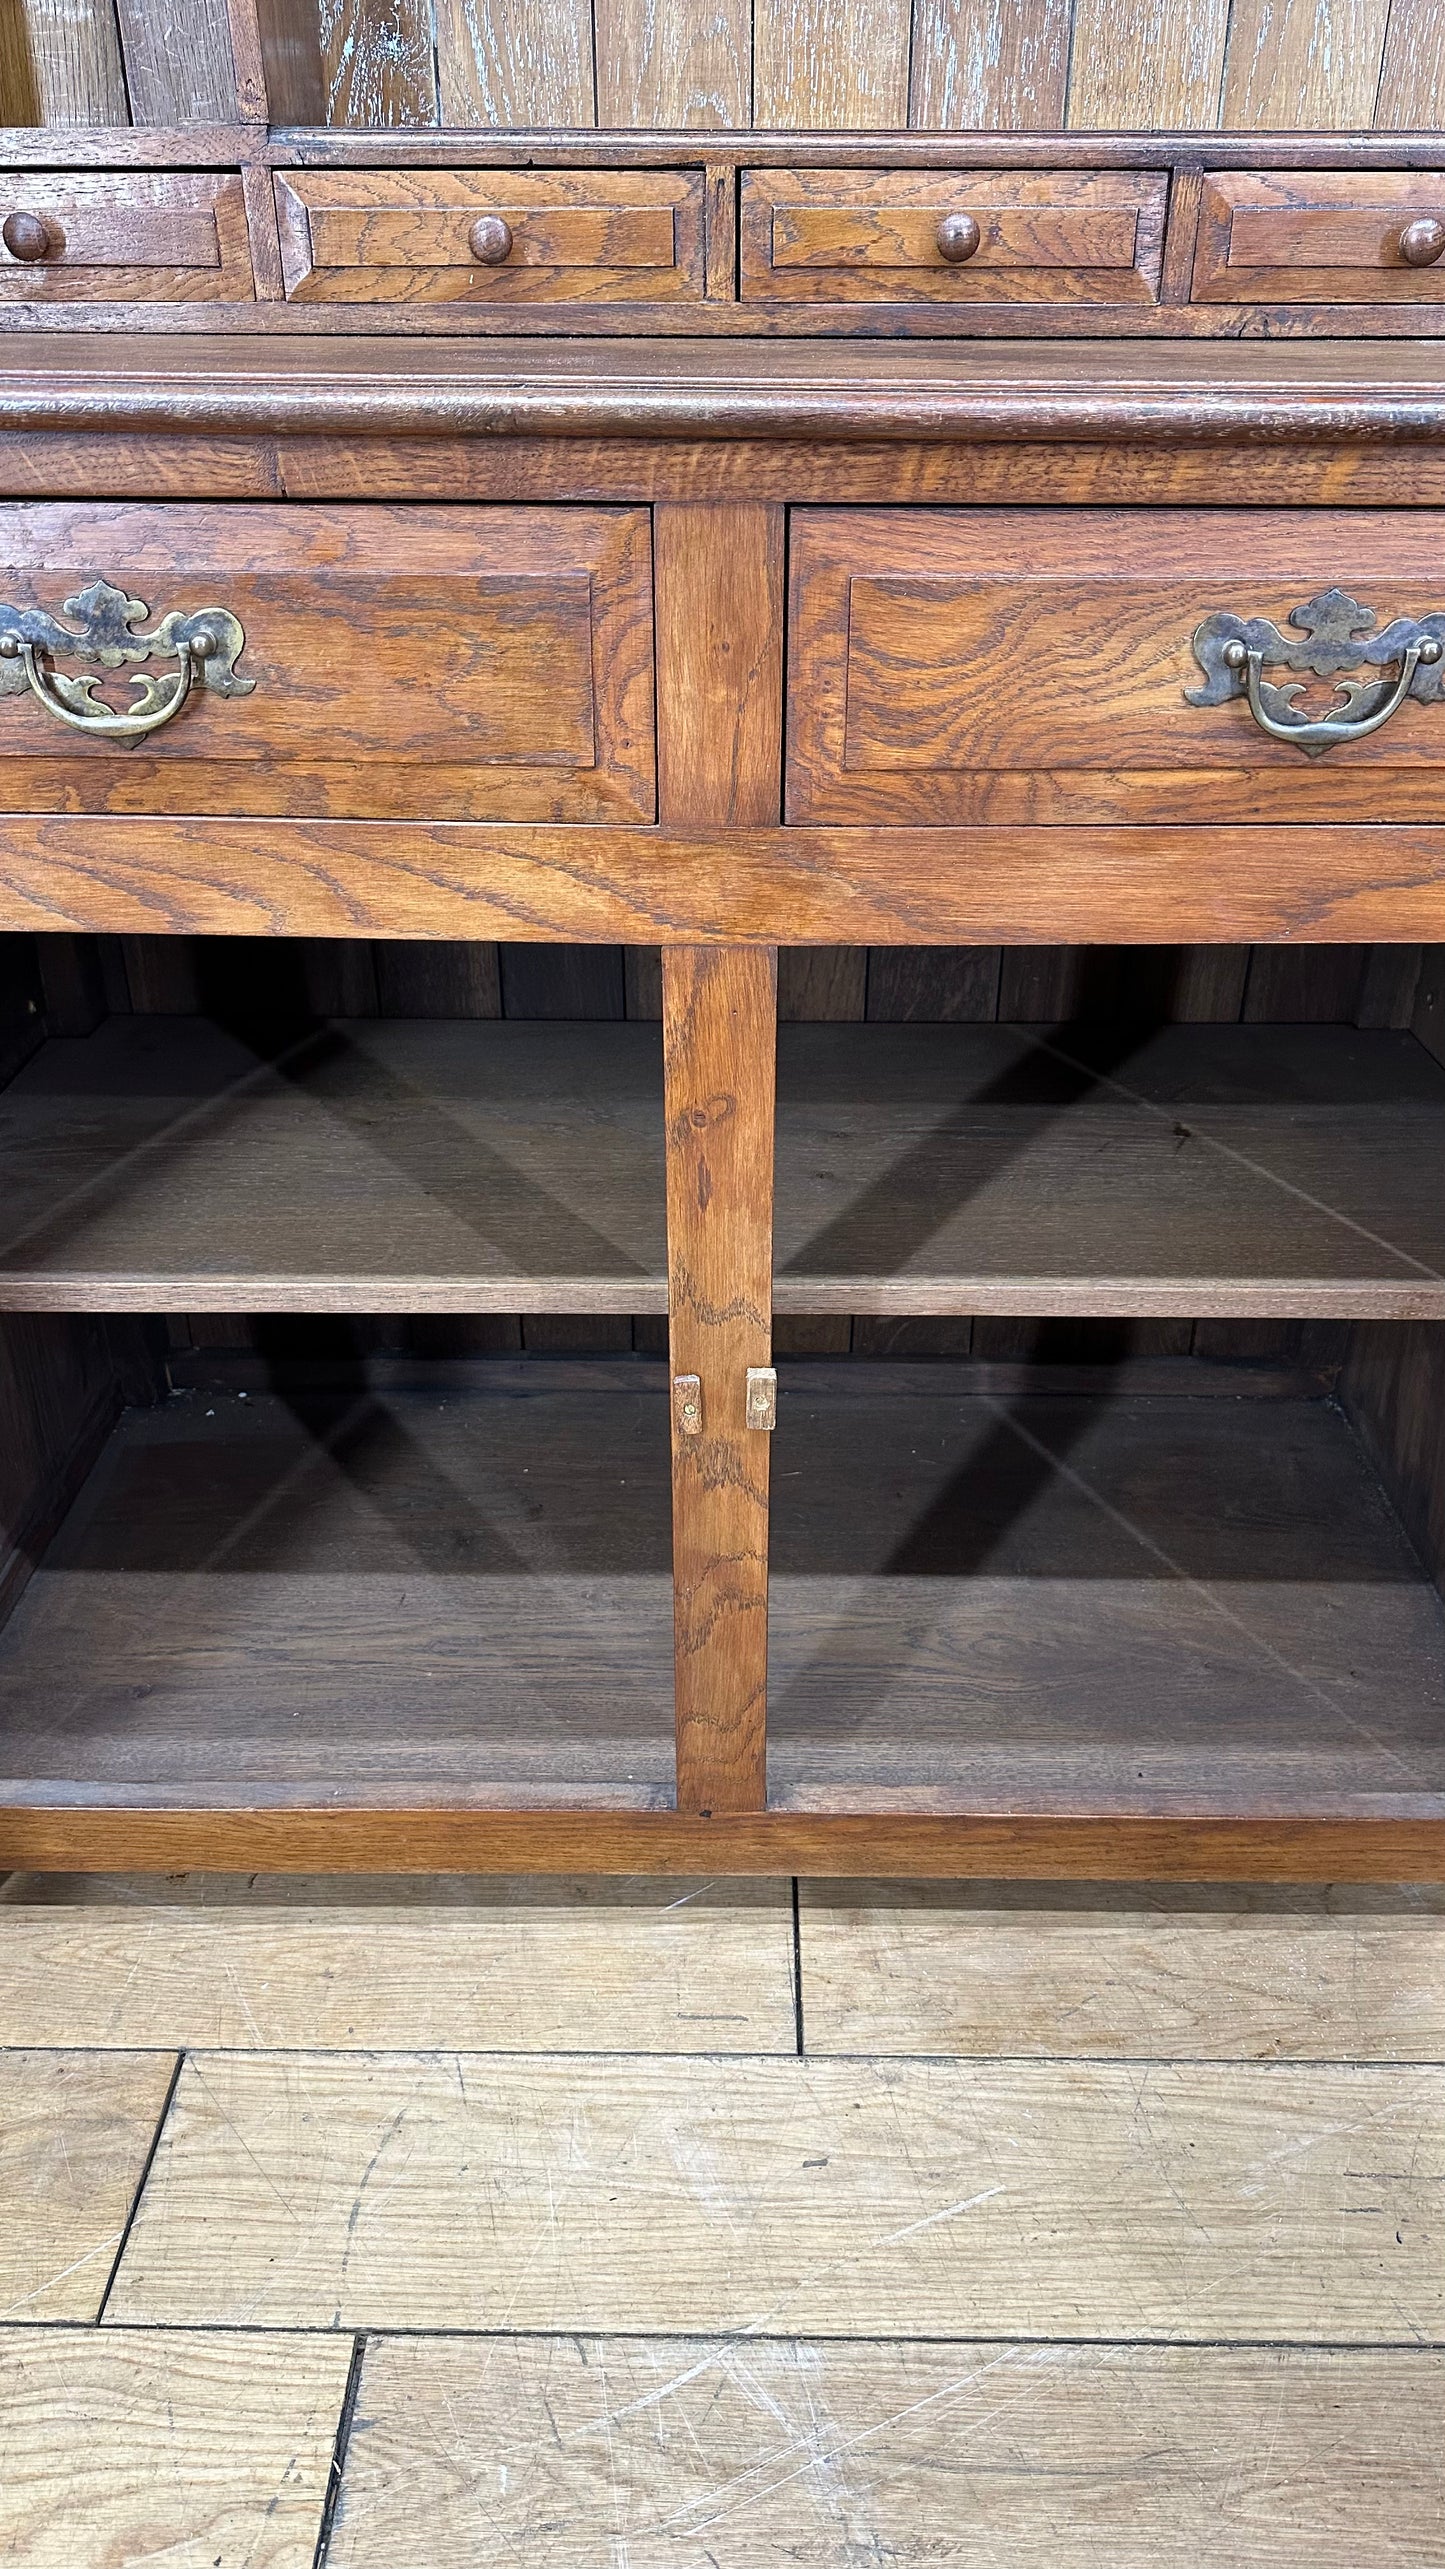 Vintage Oak Dresser / Large Kitchen Cupboard / Buffet Server / Display Dresser